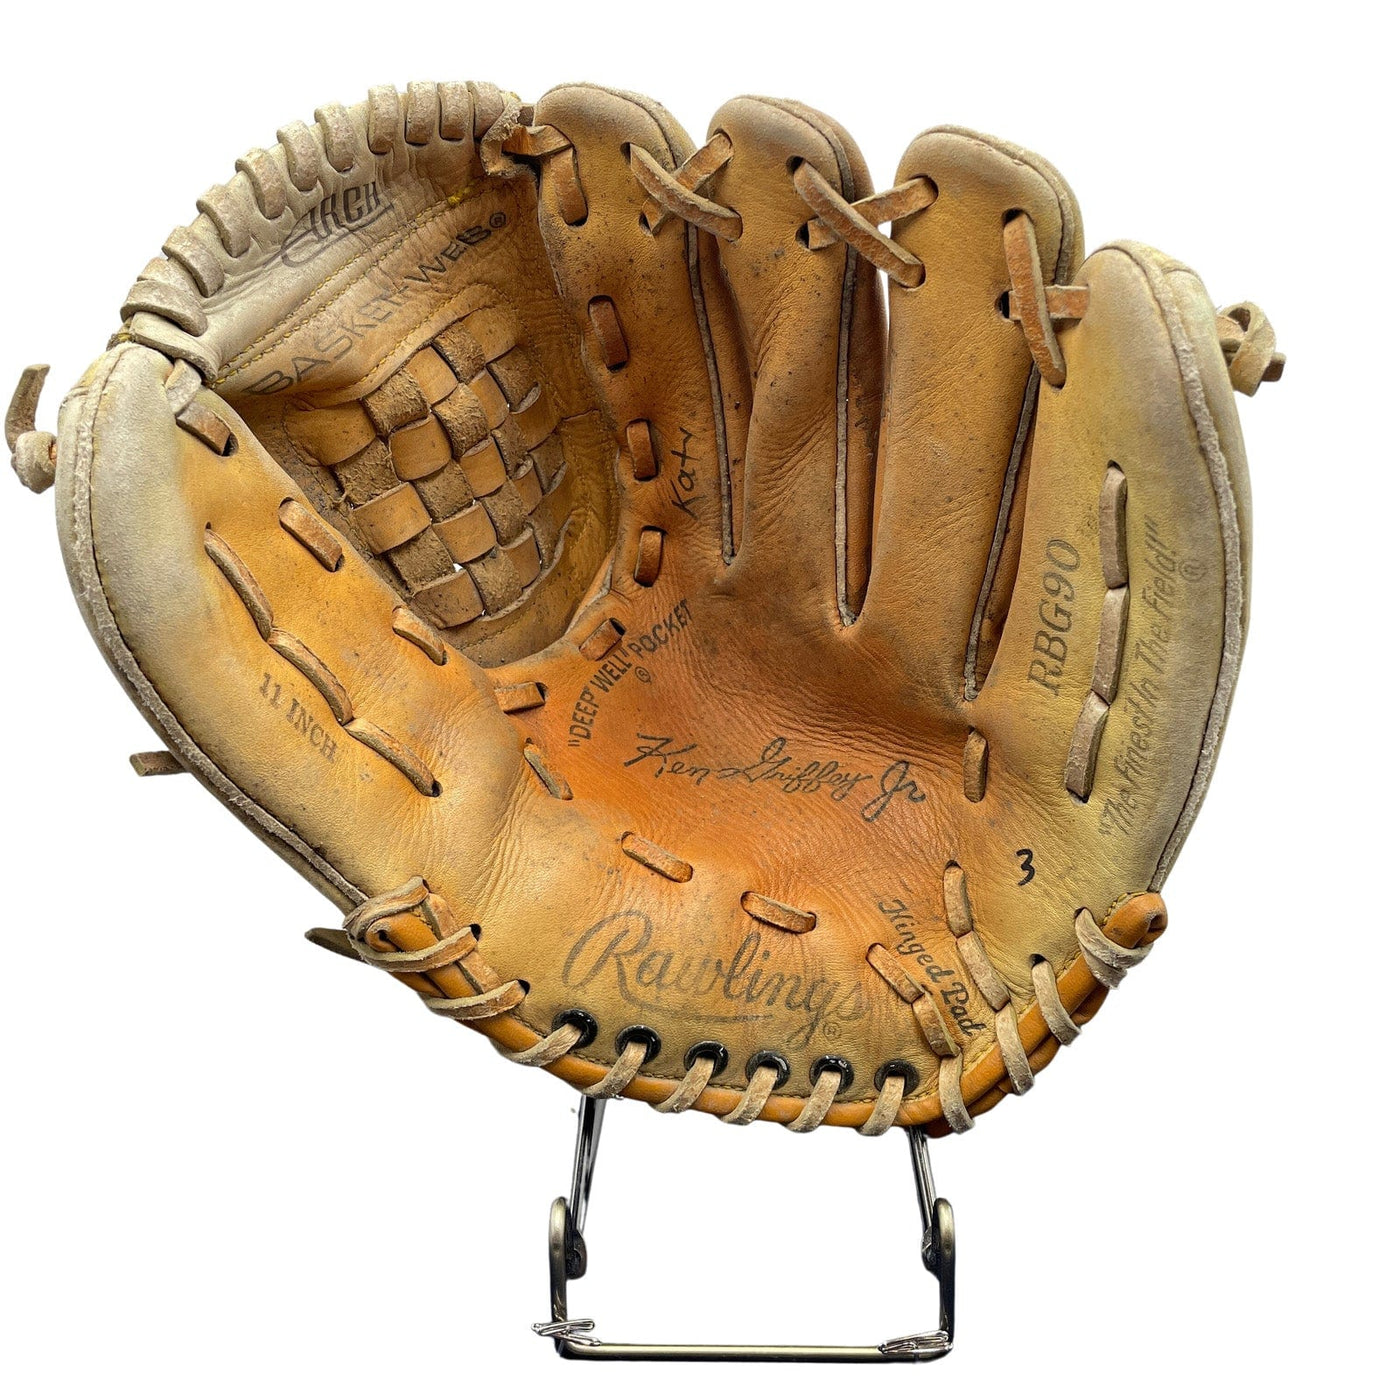 Ken Griffey Jr. Baseball Glove - G022